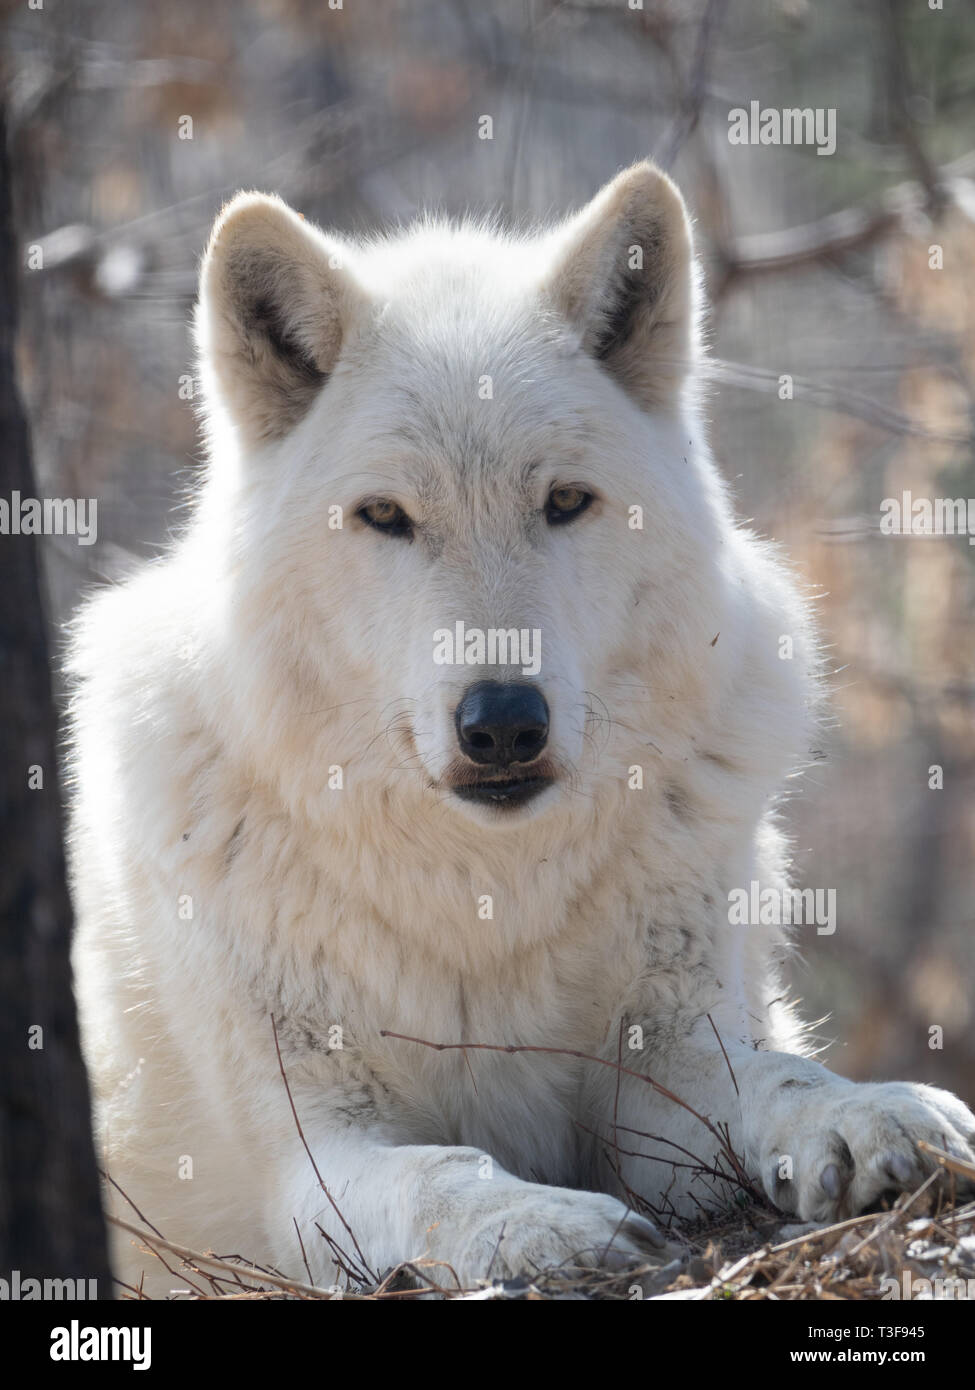 Nahaufnahme von einem grauen Wolf in die Kamera schaut, sitzen unter getrockneten Zweigen und Gras mit einem geringen Tiefenschärfe fotografiert. Stockfoto